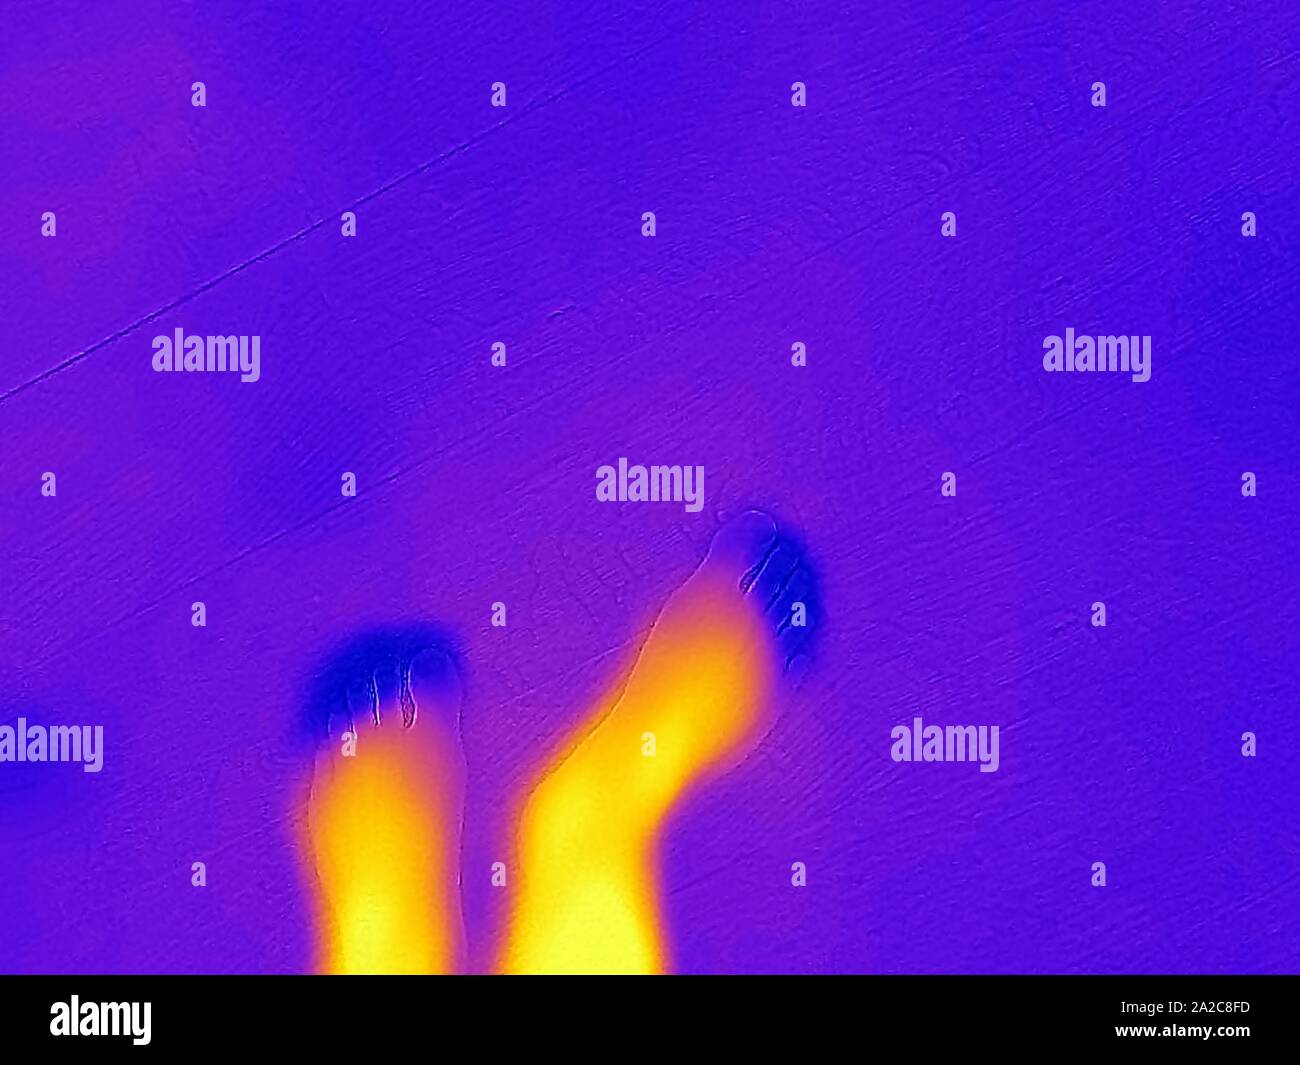 Thermografiebild der Wärmebildkamera mit hellen Bereichen, die höheren Temperaturen entsprechen und die Füße und Zehen eines Mannes zeigen, mit Zehen bei niedriger Temperatur, was auf eine schlechte Durchblutung oder einen ähnlichen Zustand hindeutet, San Ramon, Kalifornien, September 2019. () Stockfoto